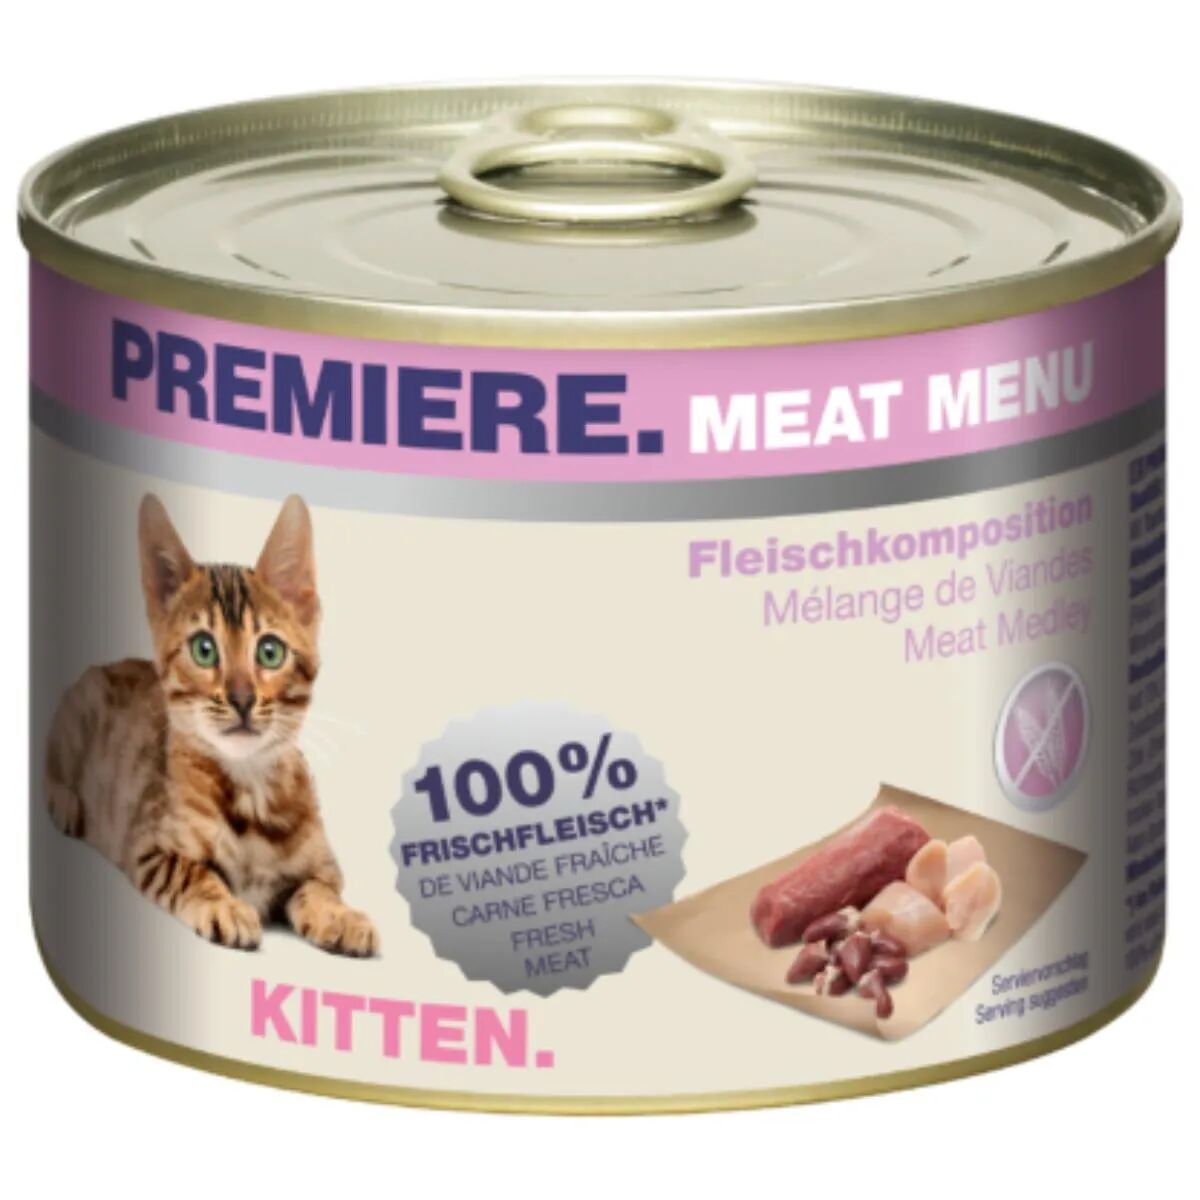 PREMIERE Meat Menu Kitten Lattina Multipack 6x200G MIX CARNE